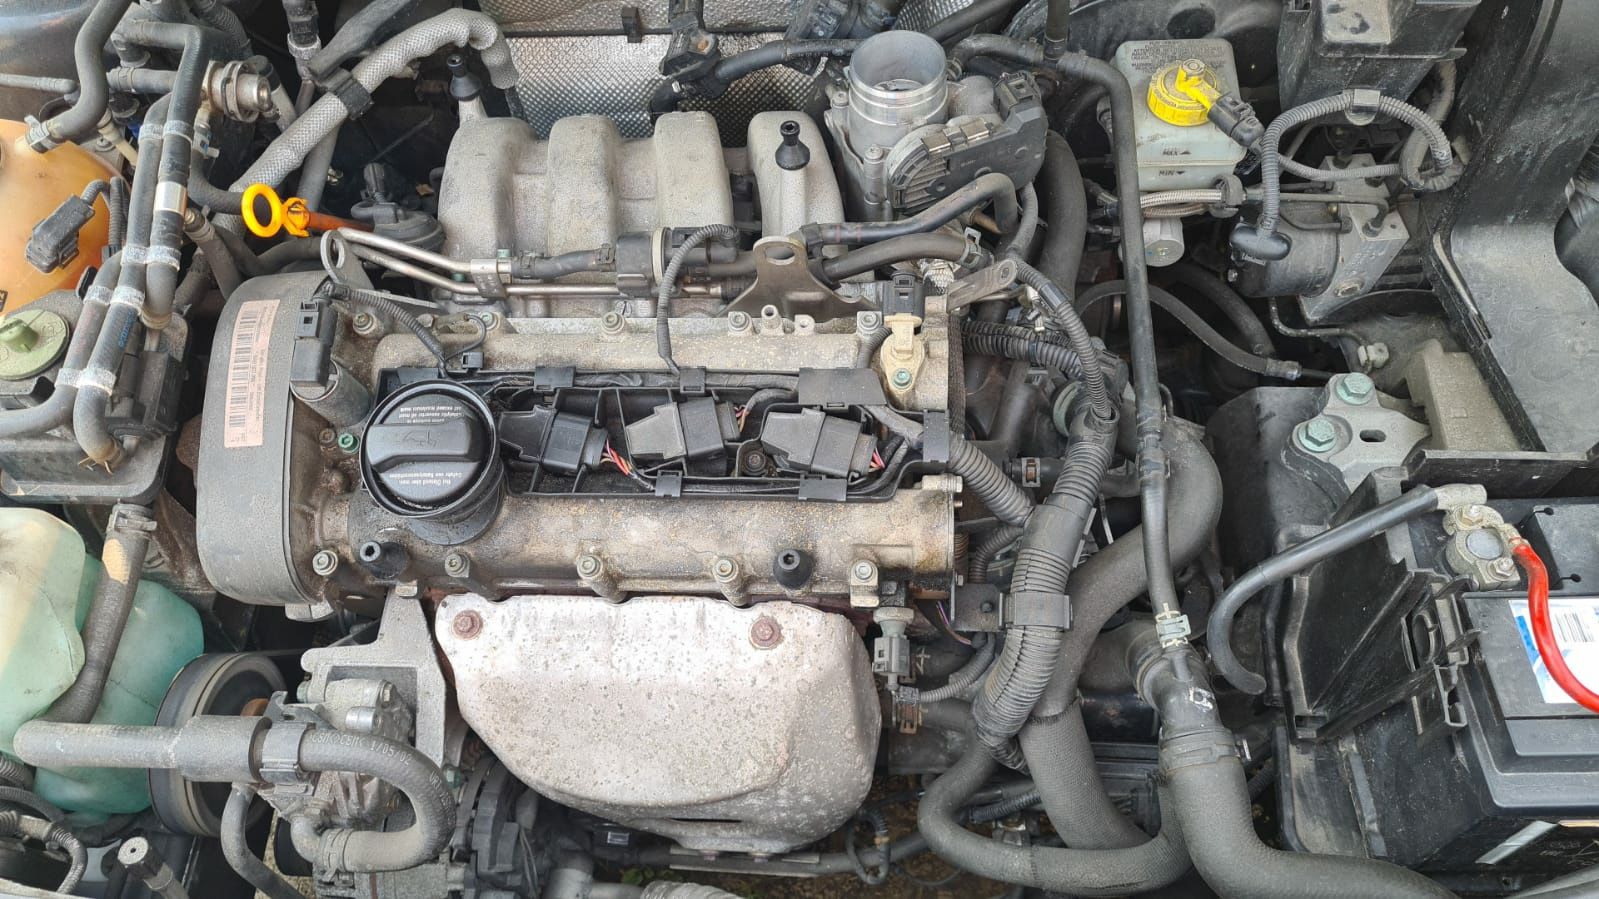 VAND REPAR Motor si piese motor Piston Golf4 Bora1.4AXp-1.6 FSI. P